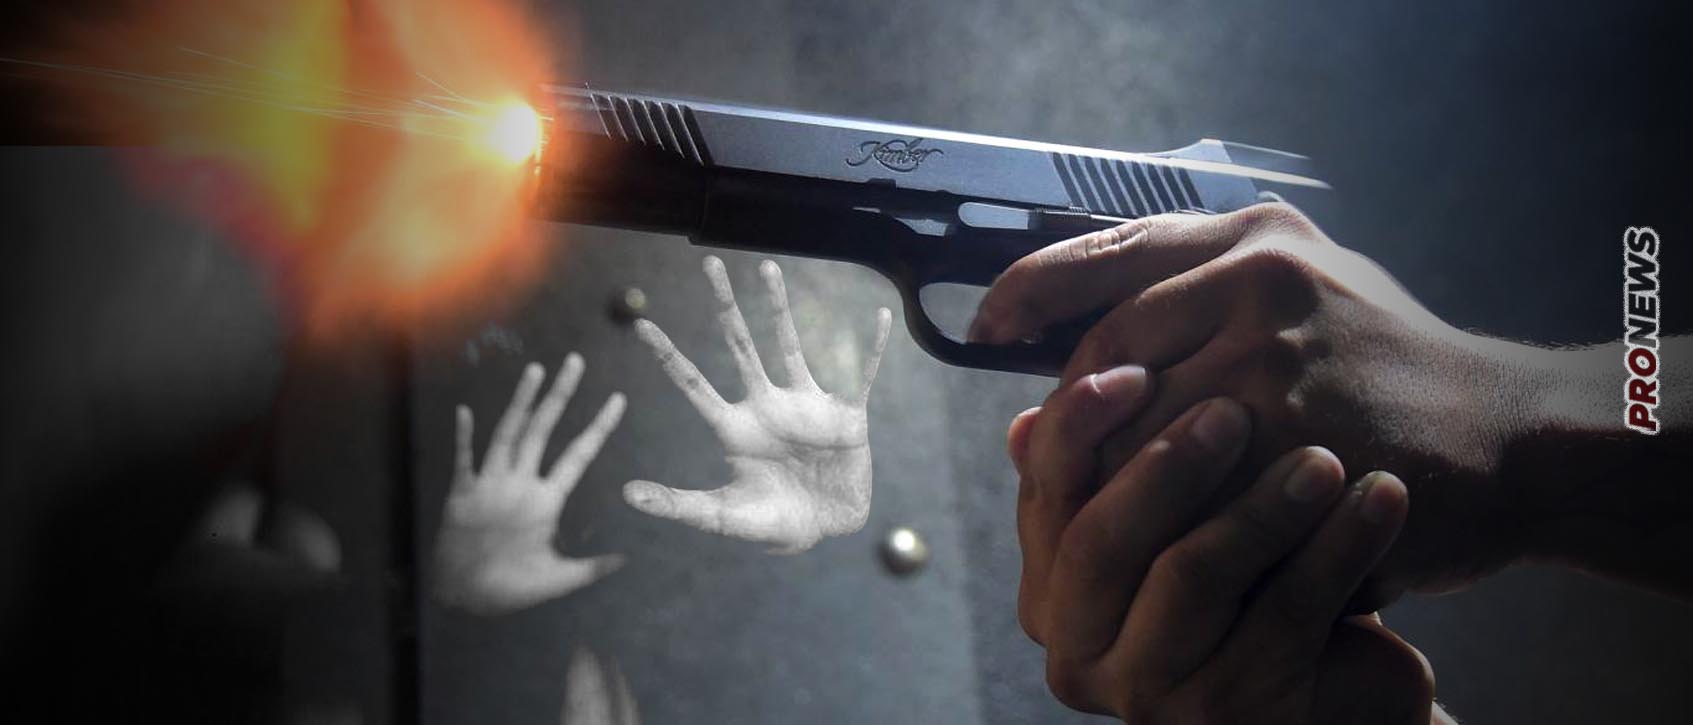 Καλαμαριά: 38χρονος αστυνομικός δολοφόνησε τη μητέρα των δύο ανήλικων παιδιών του και αυτοκτόνησε